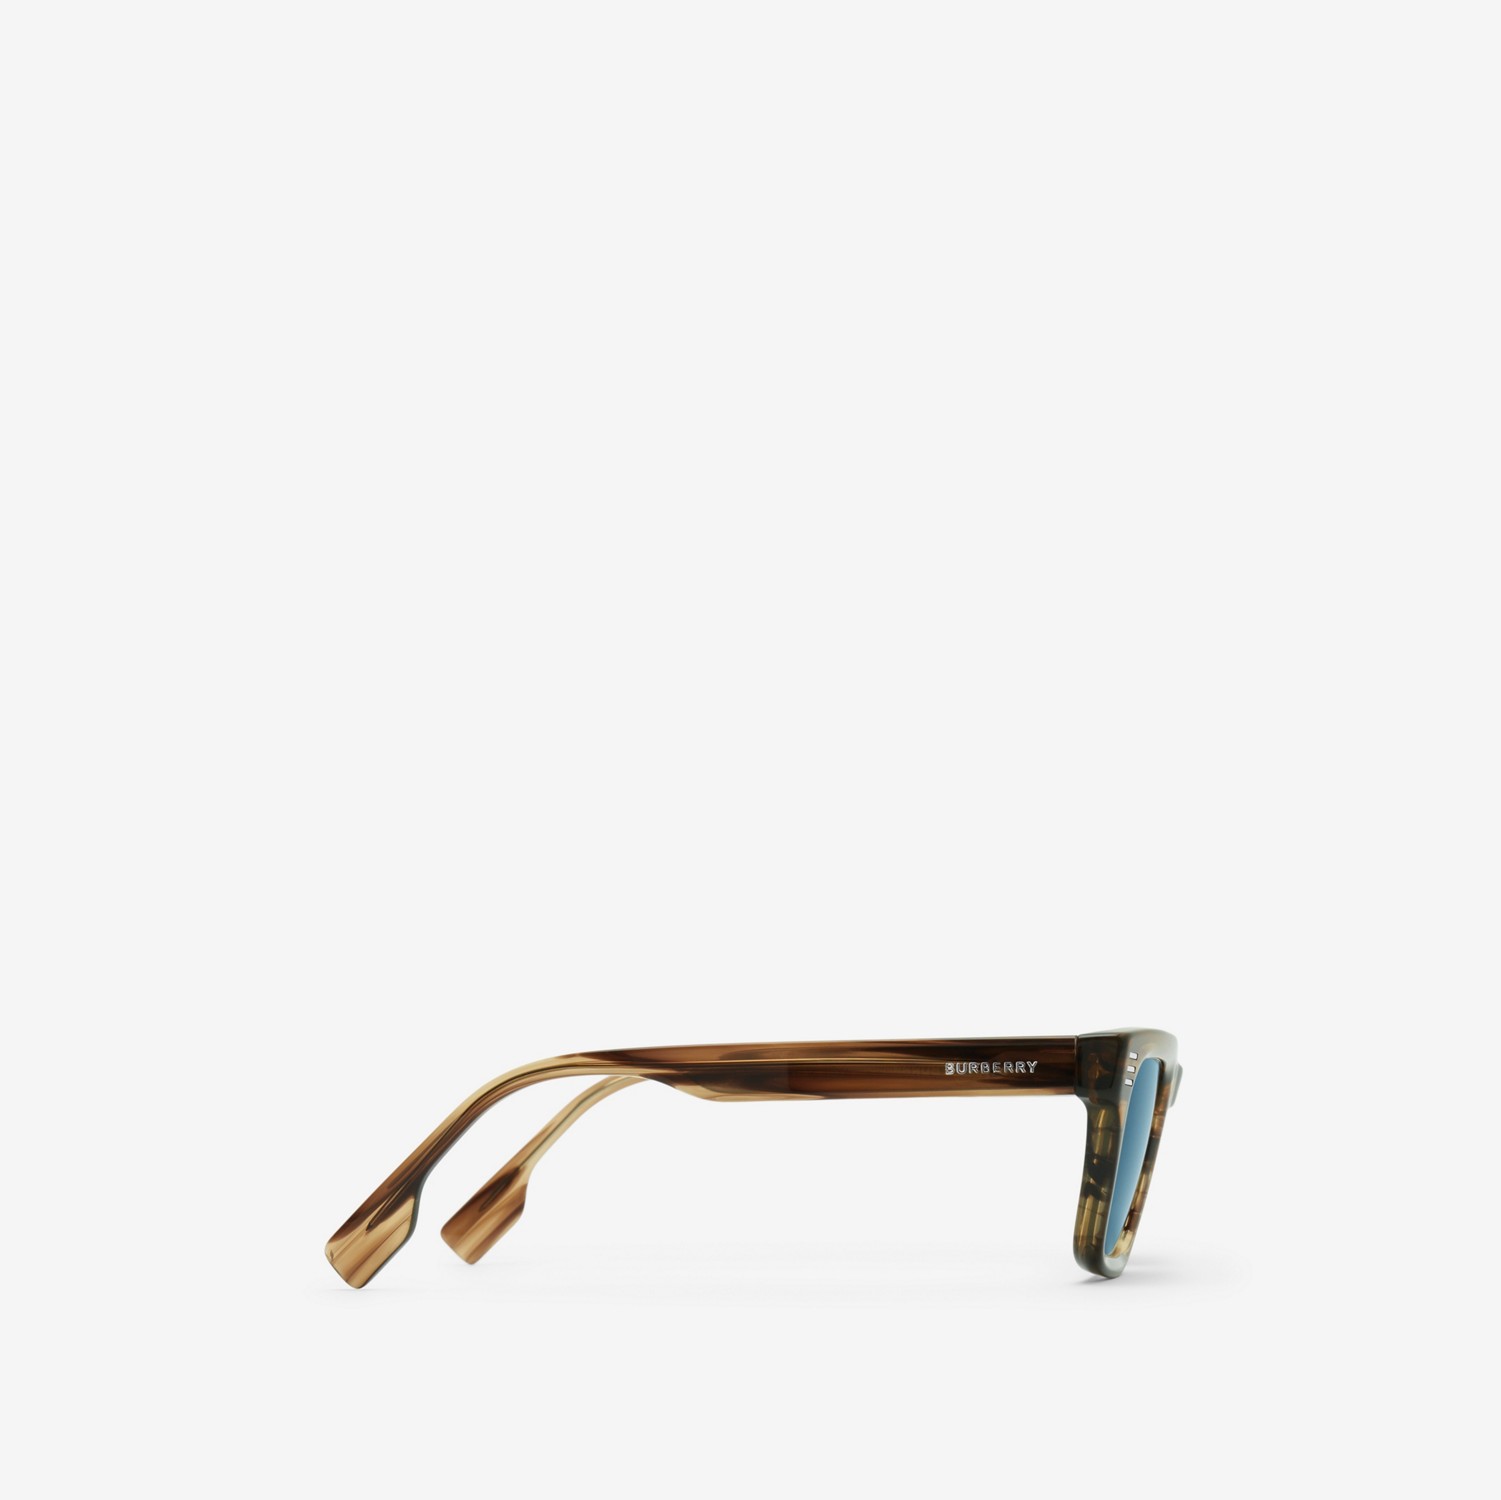 Stripe Square Sunglasses